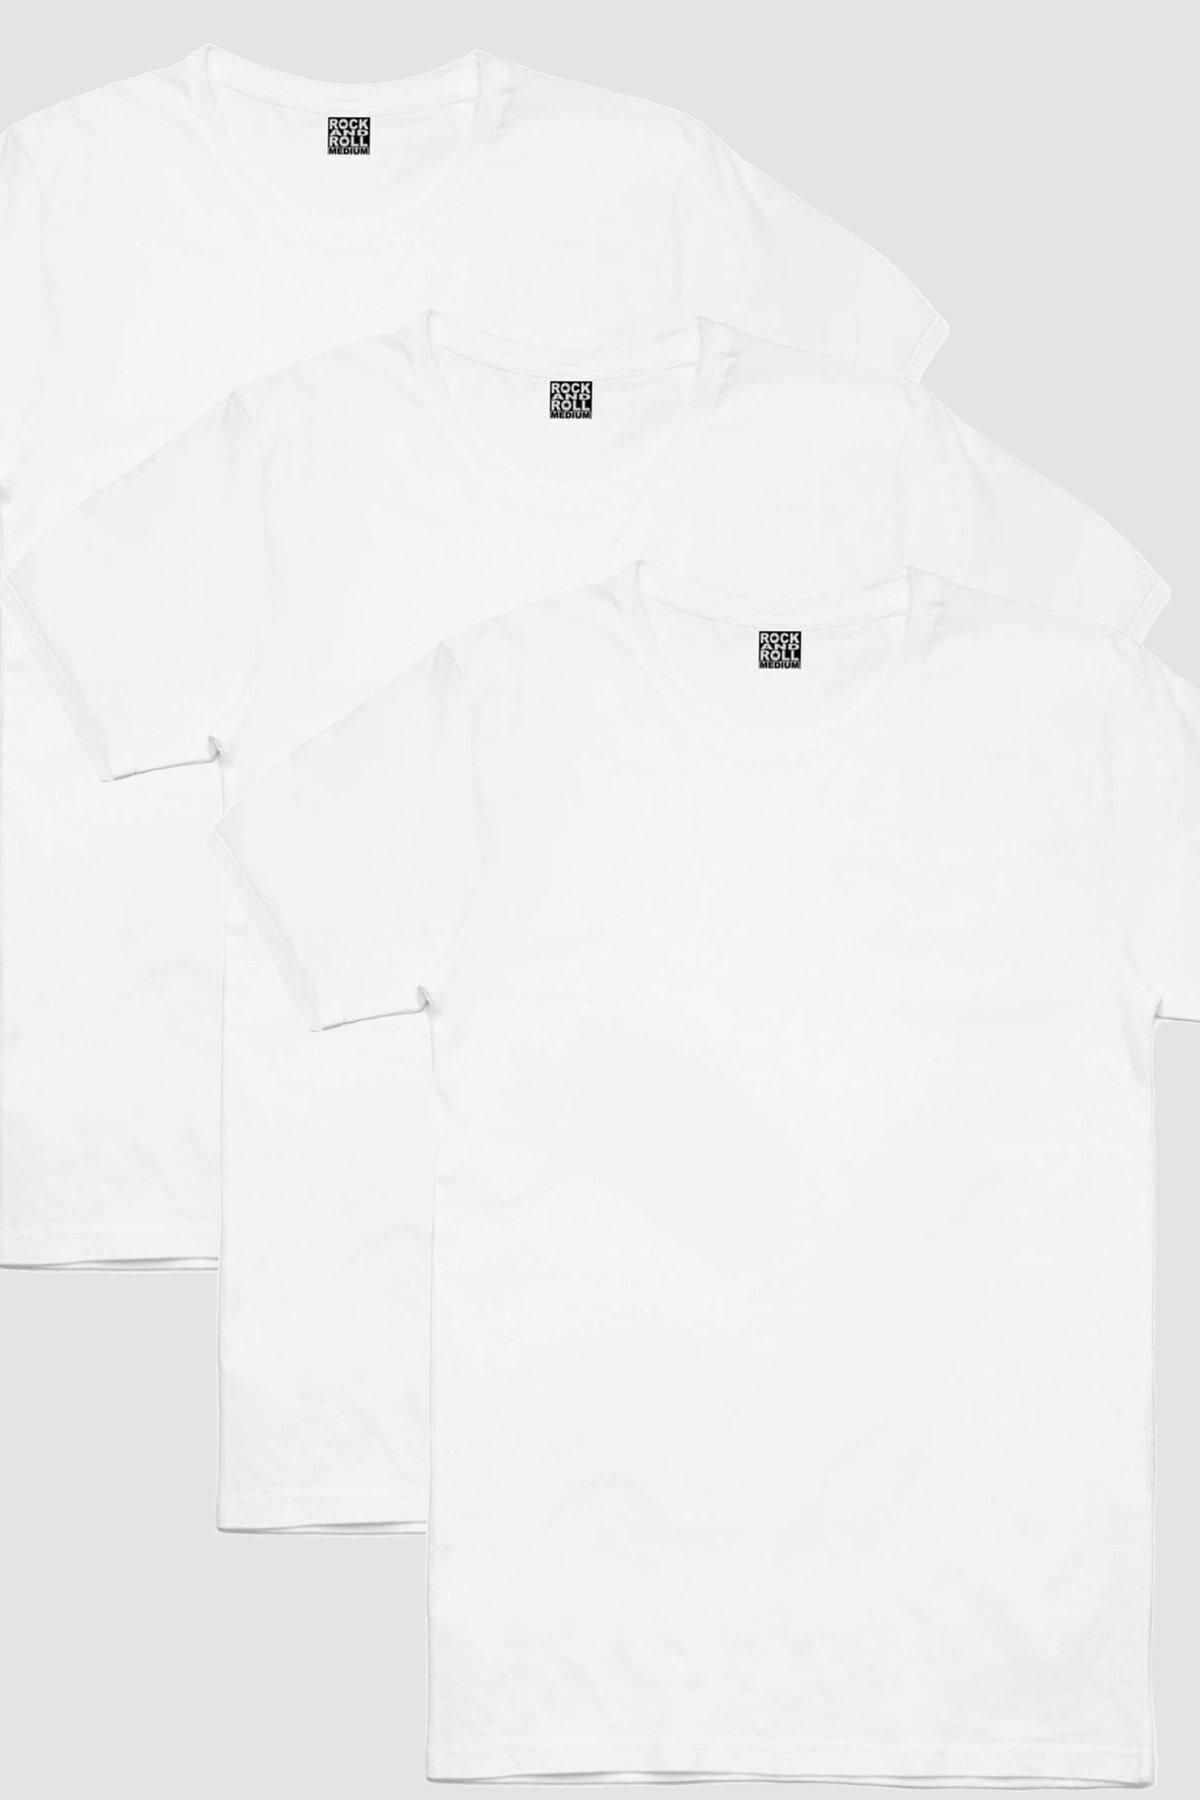 Düz, Bakısız Beyaz Kadın 3'lü Eko Paket Tshirt